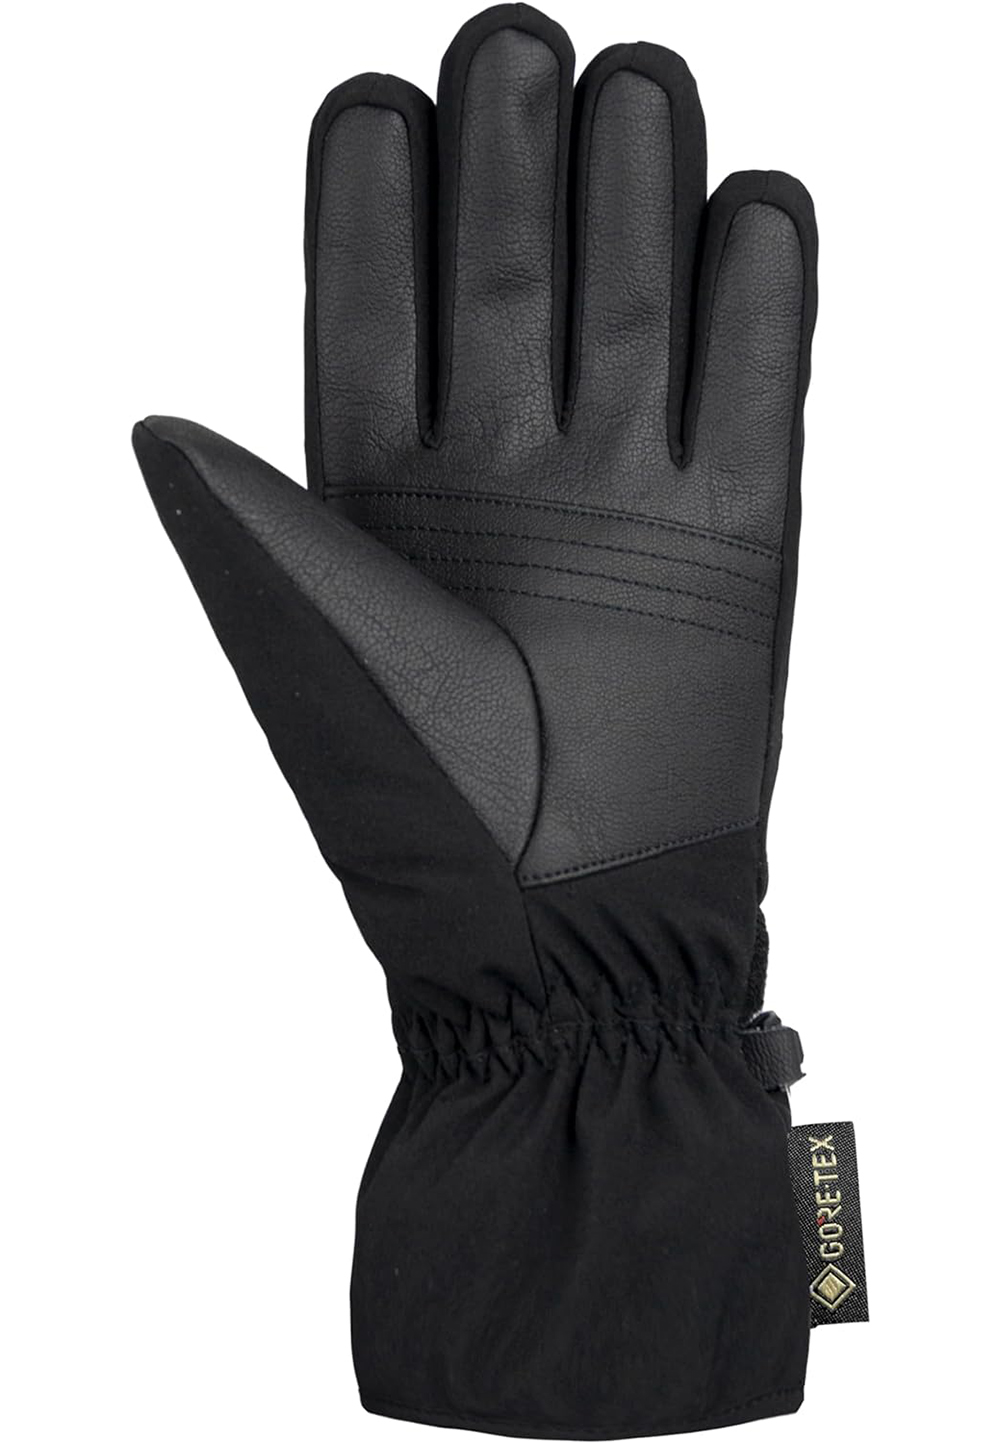 Reusch Damen Sandy GORE-TEX Handschuhe 6290326 schwarz 